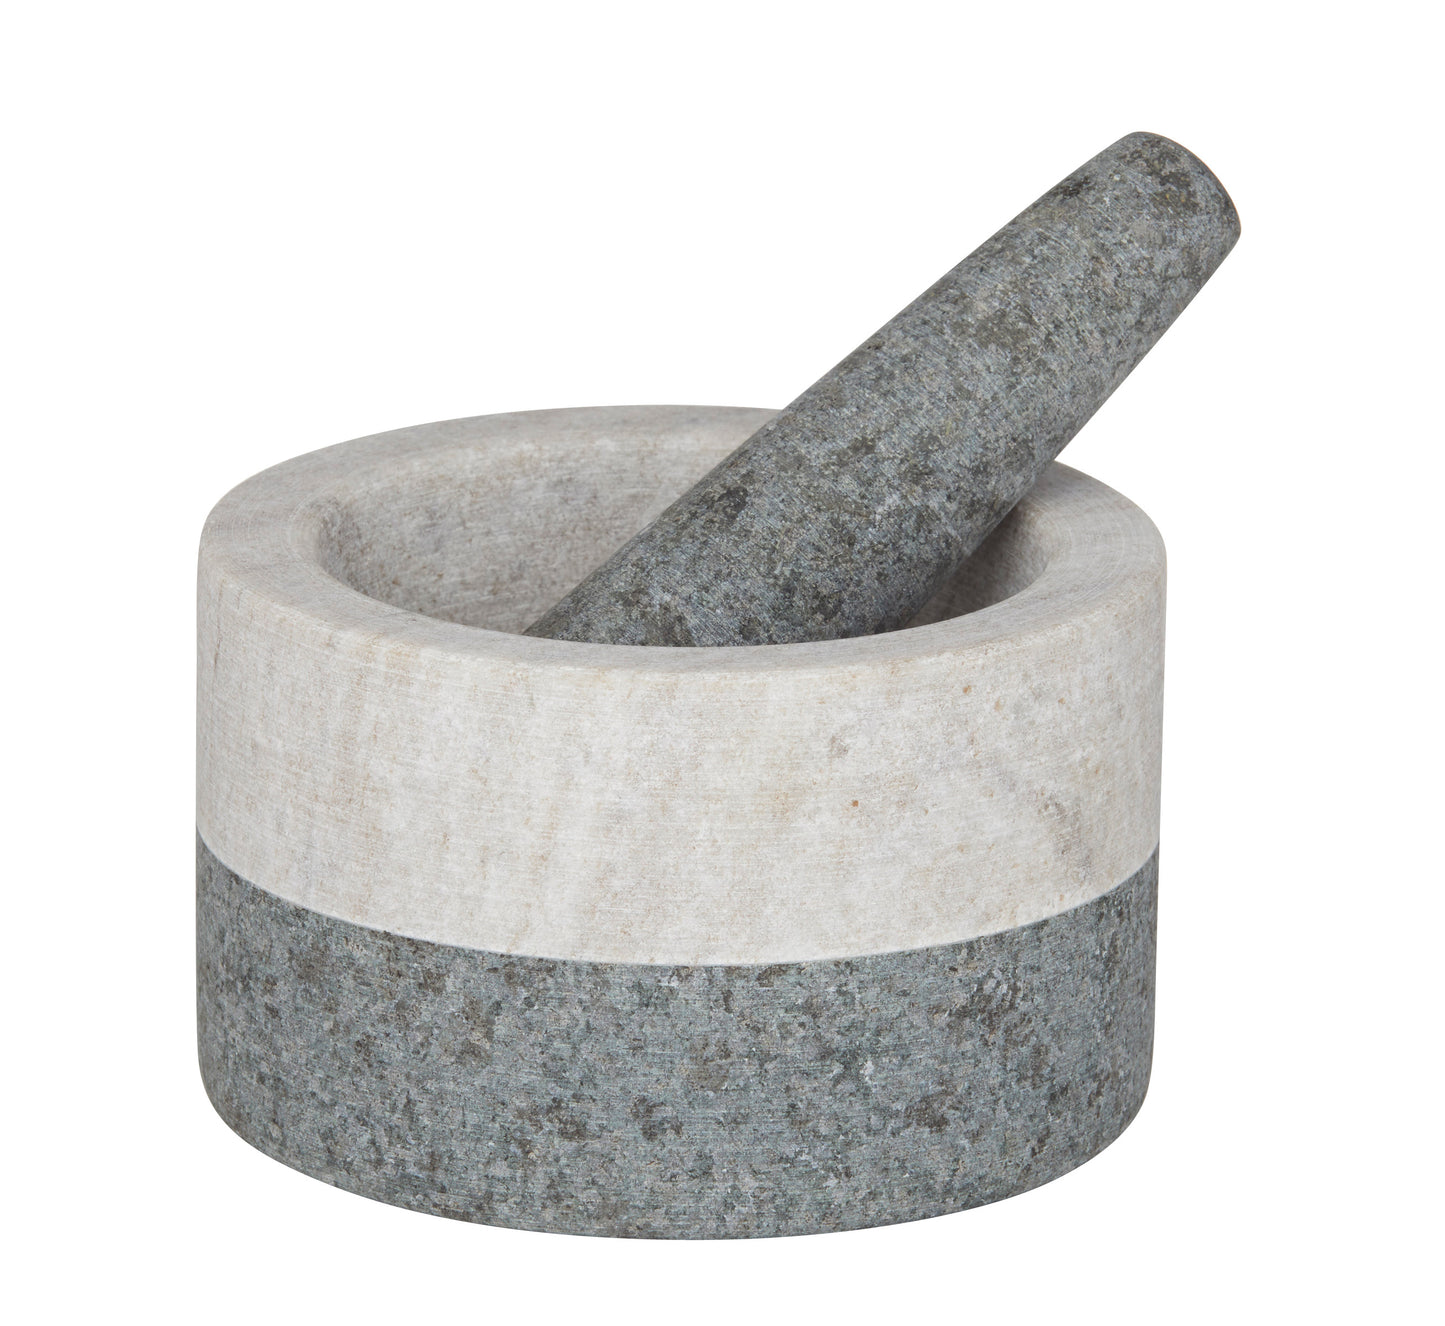 Granite/Marble Mortar & Pestle